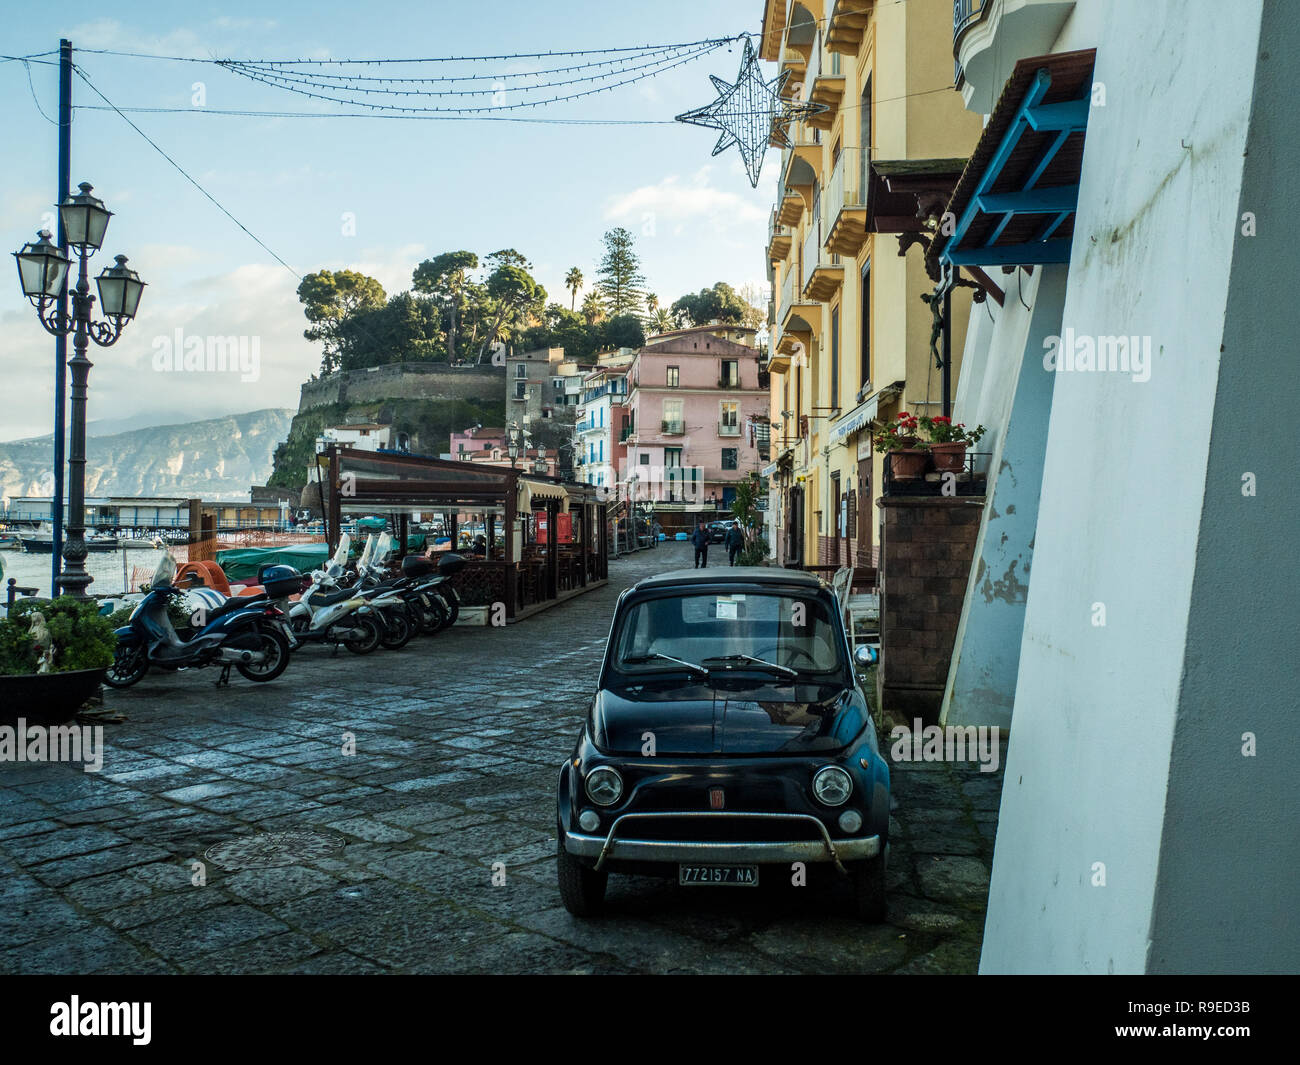 Classic Fiat 500 car parked on a street in Marina Grande, Sorrento, Campania region, Italy Stock Photo